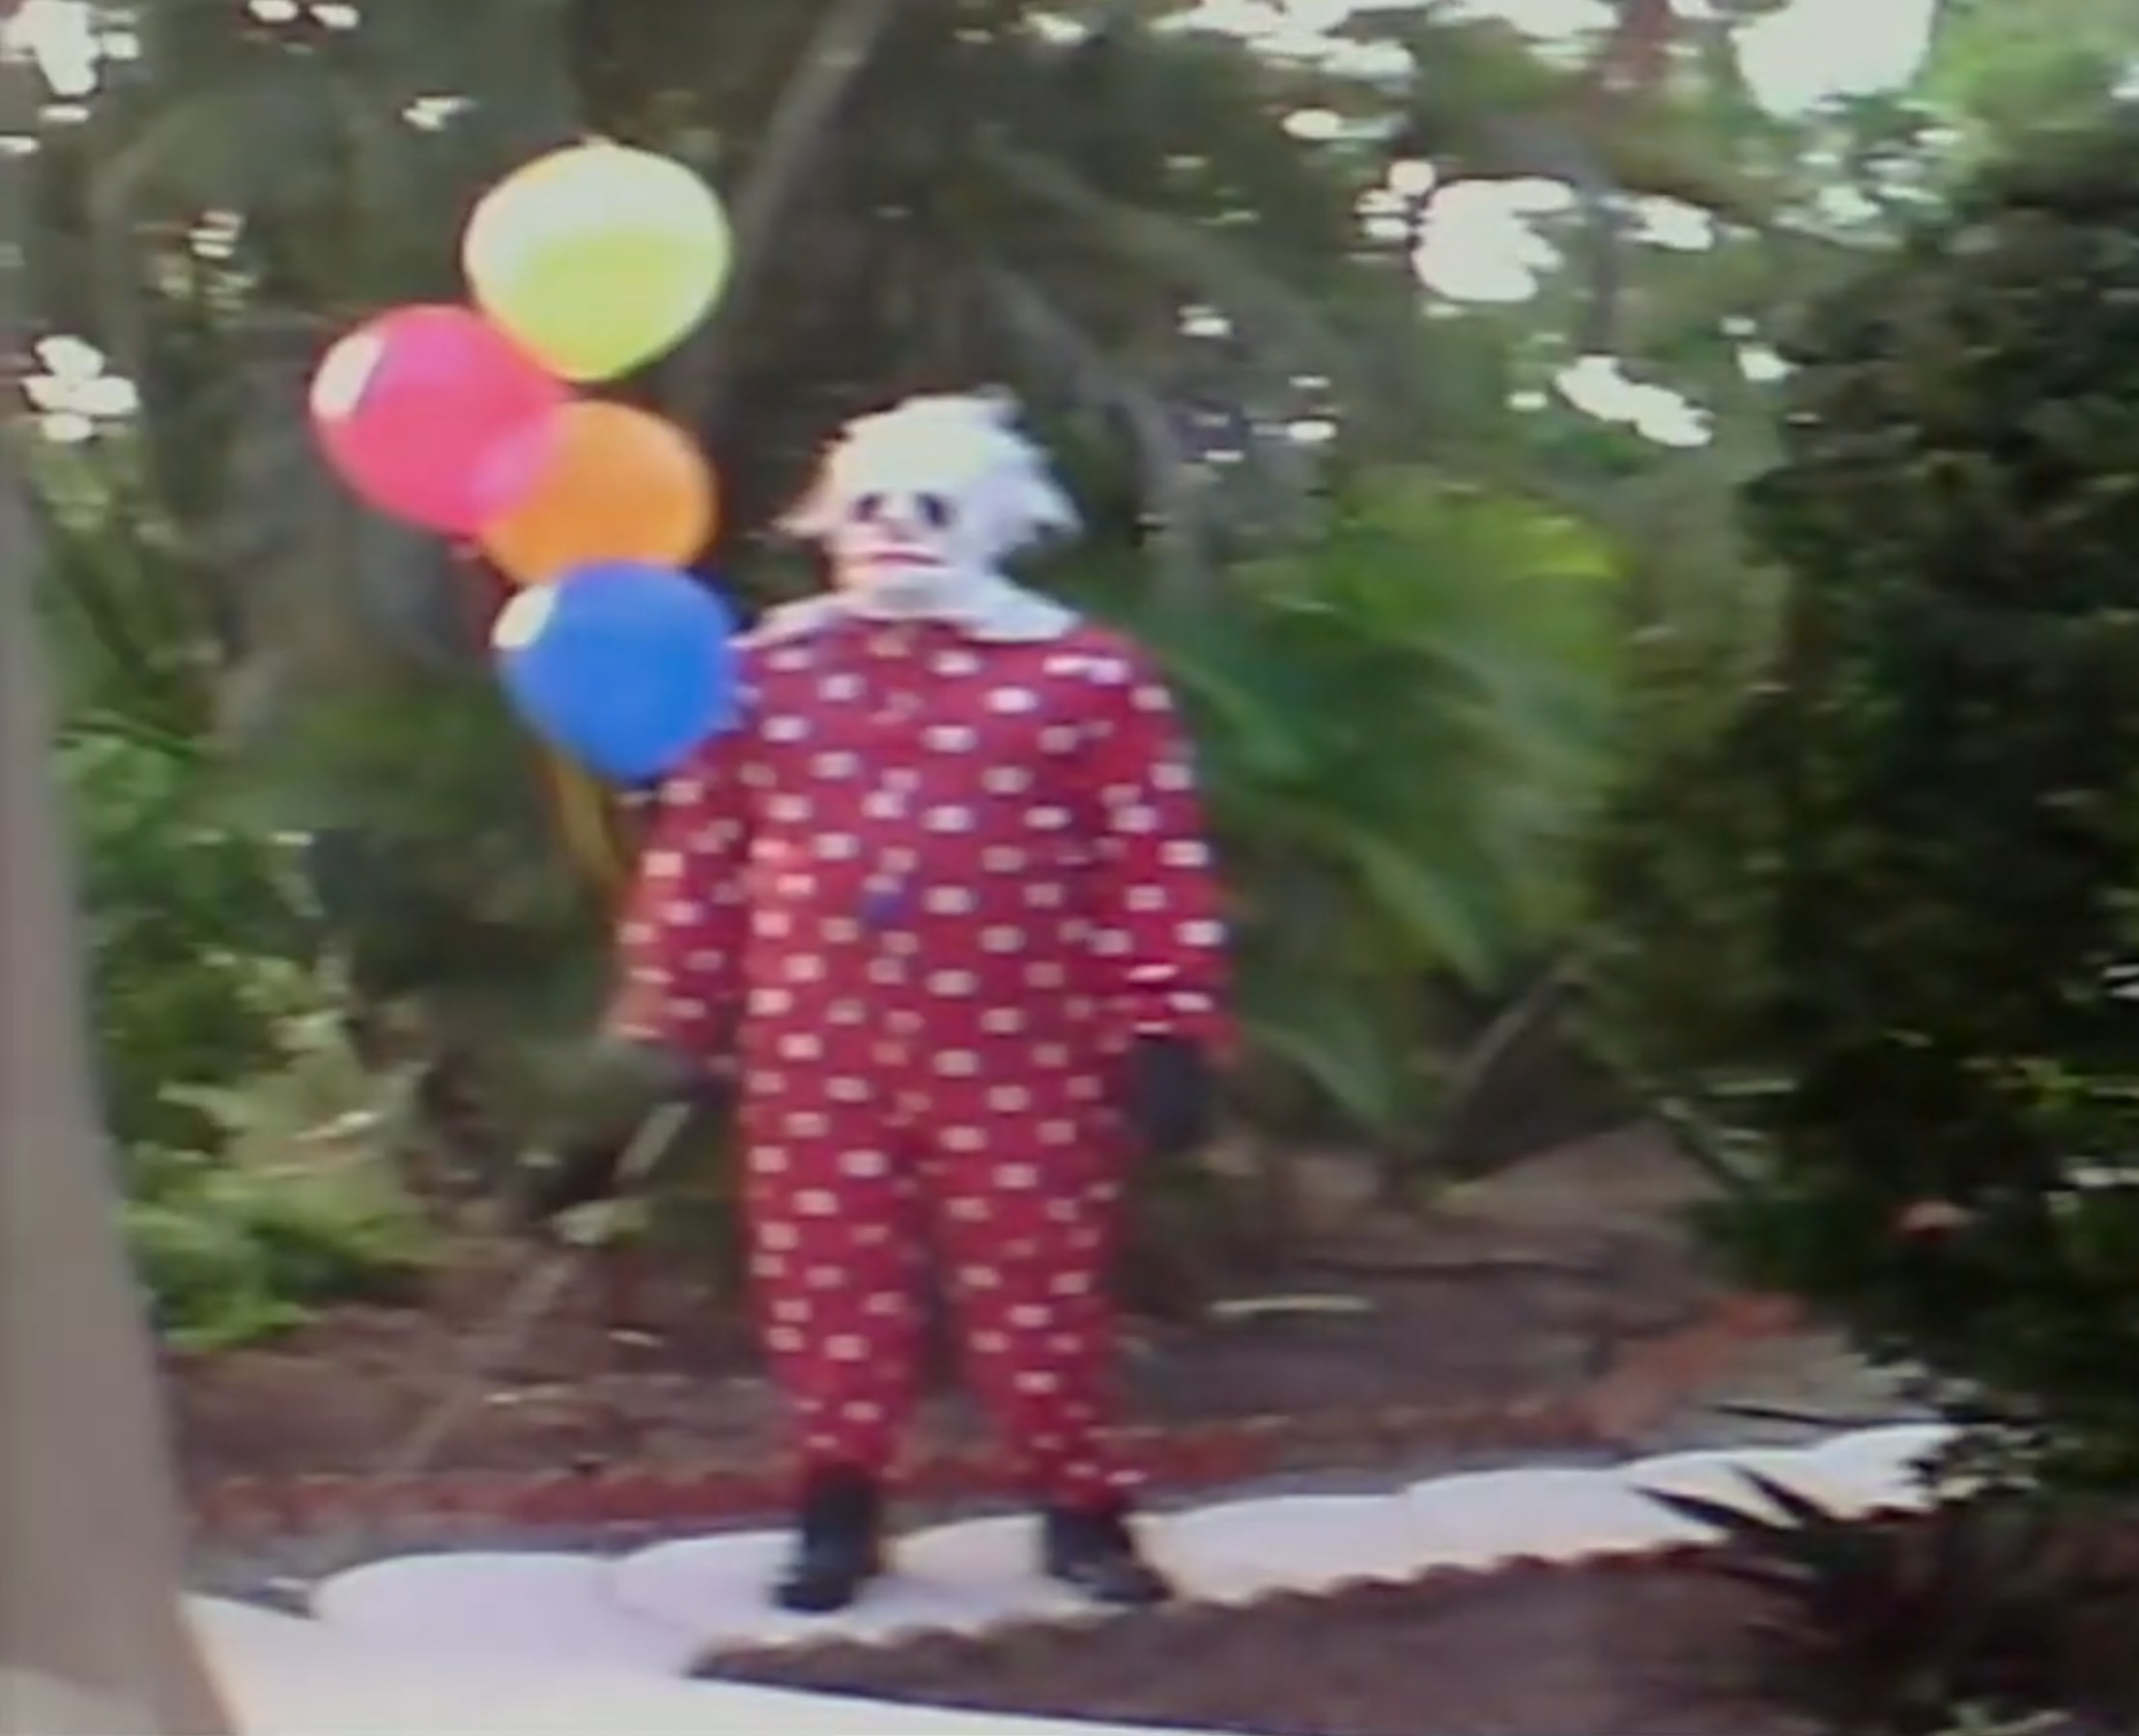 Les parents peuvent engager Wrinkles le clown pour terroriser les enfants qui se comportent mal